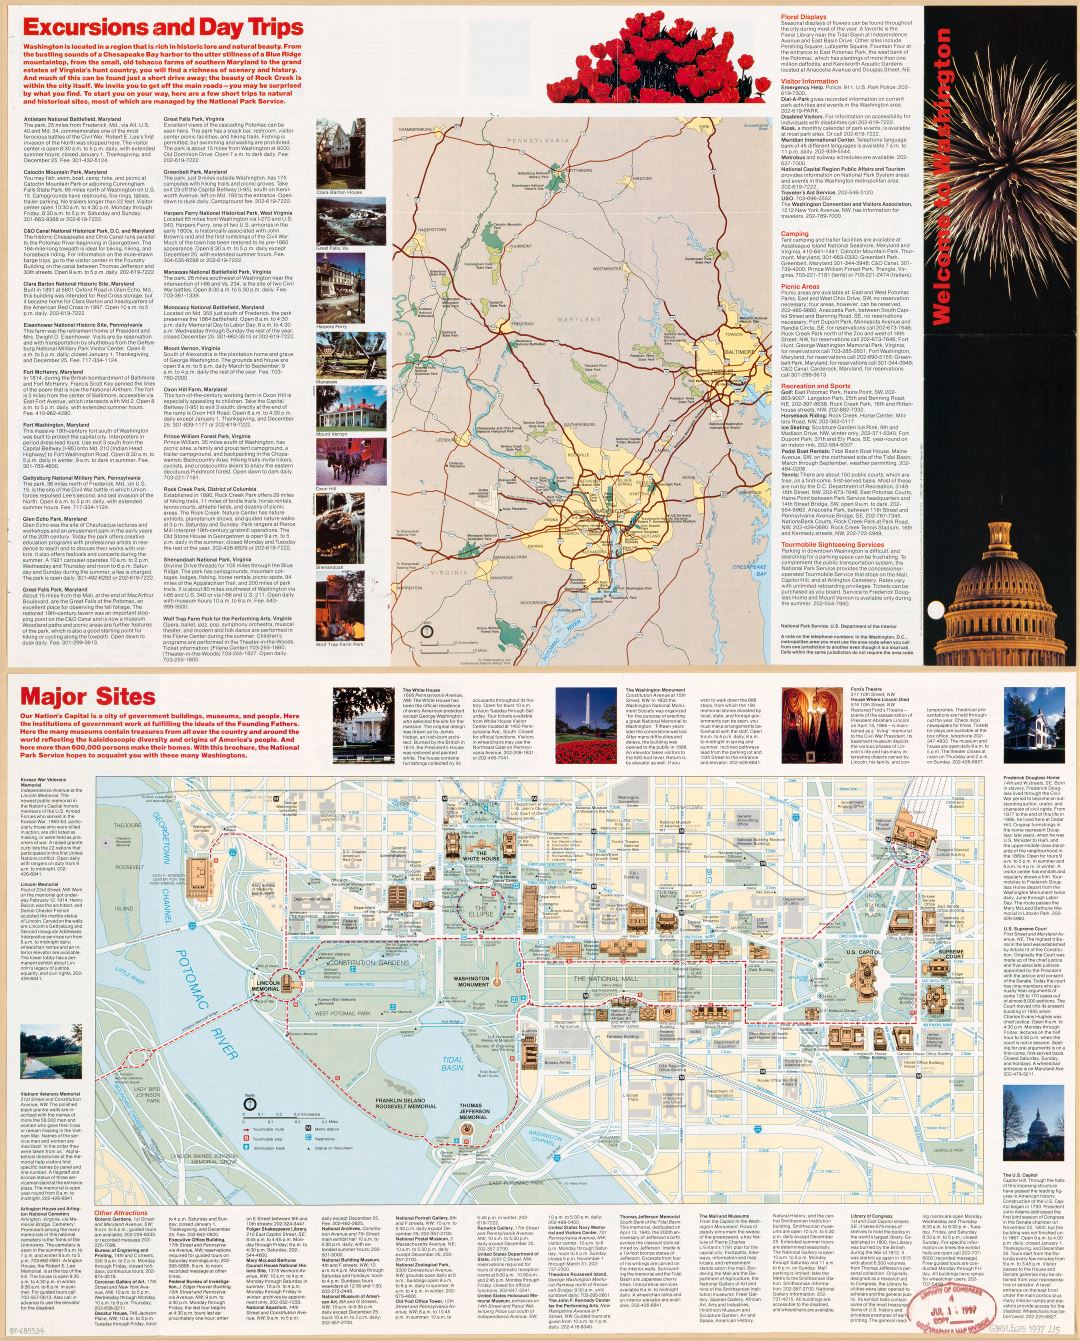 Large scale detailed Washington D.C. tourist map - 1997